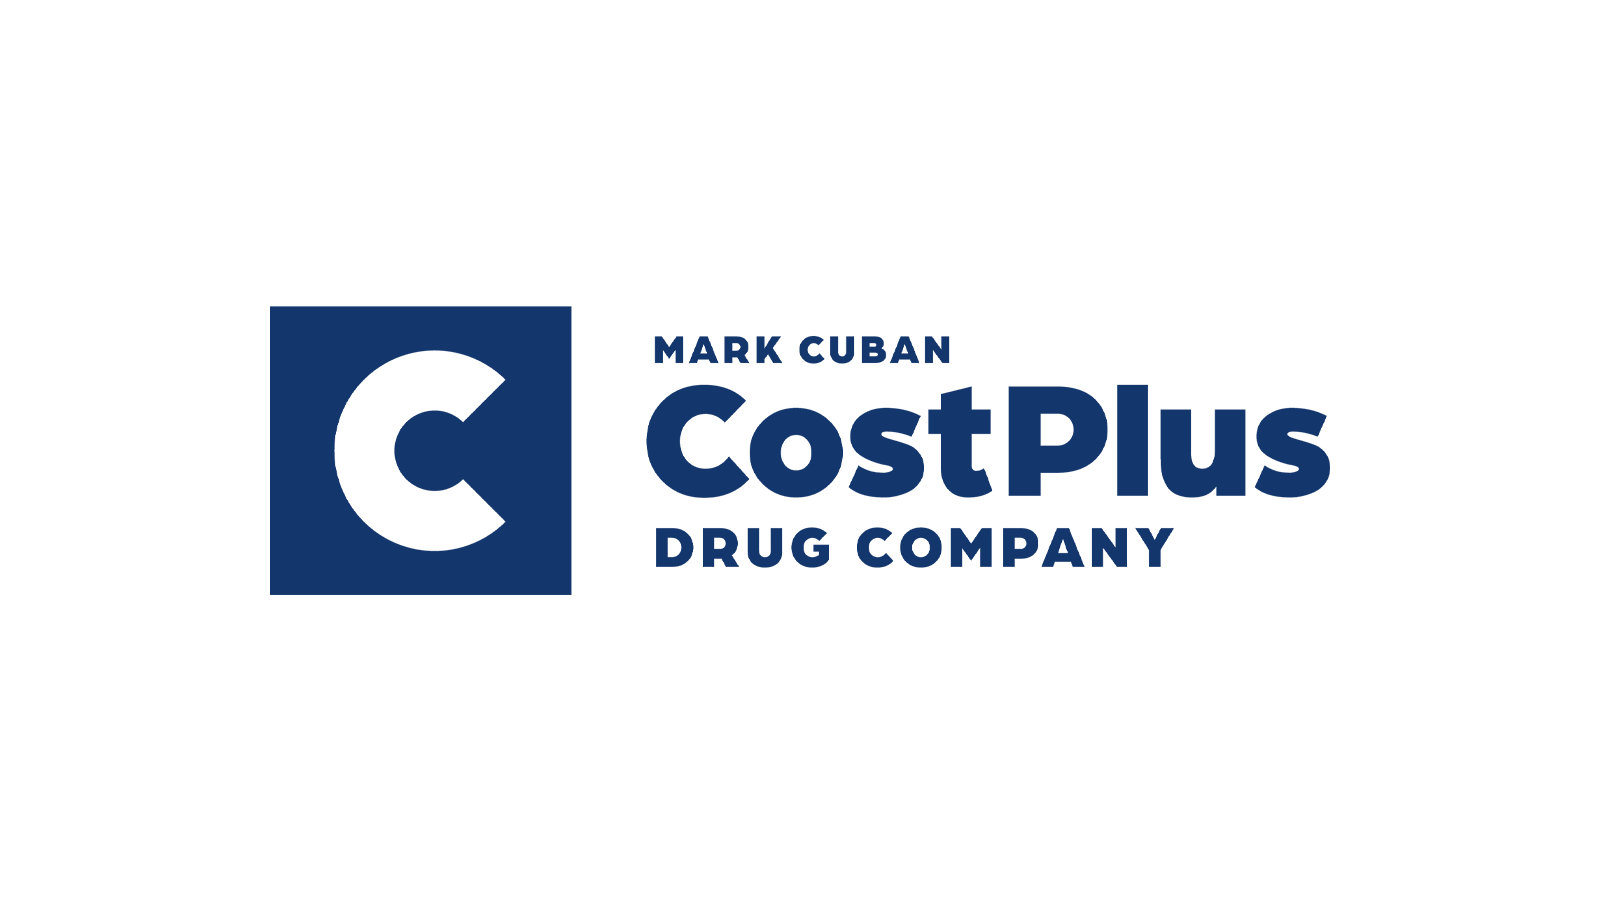 Cost Plus Drugs